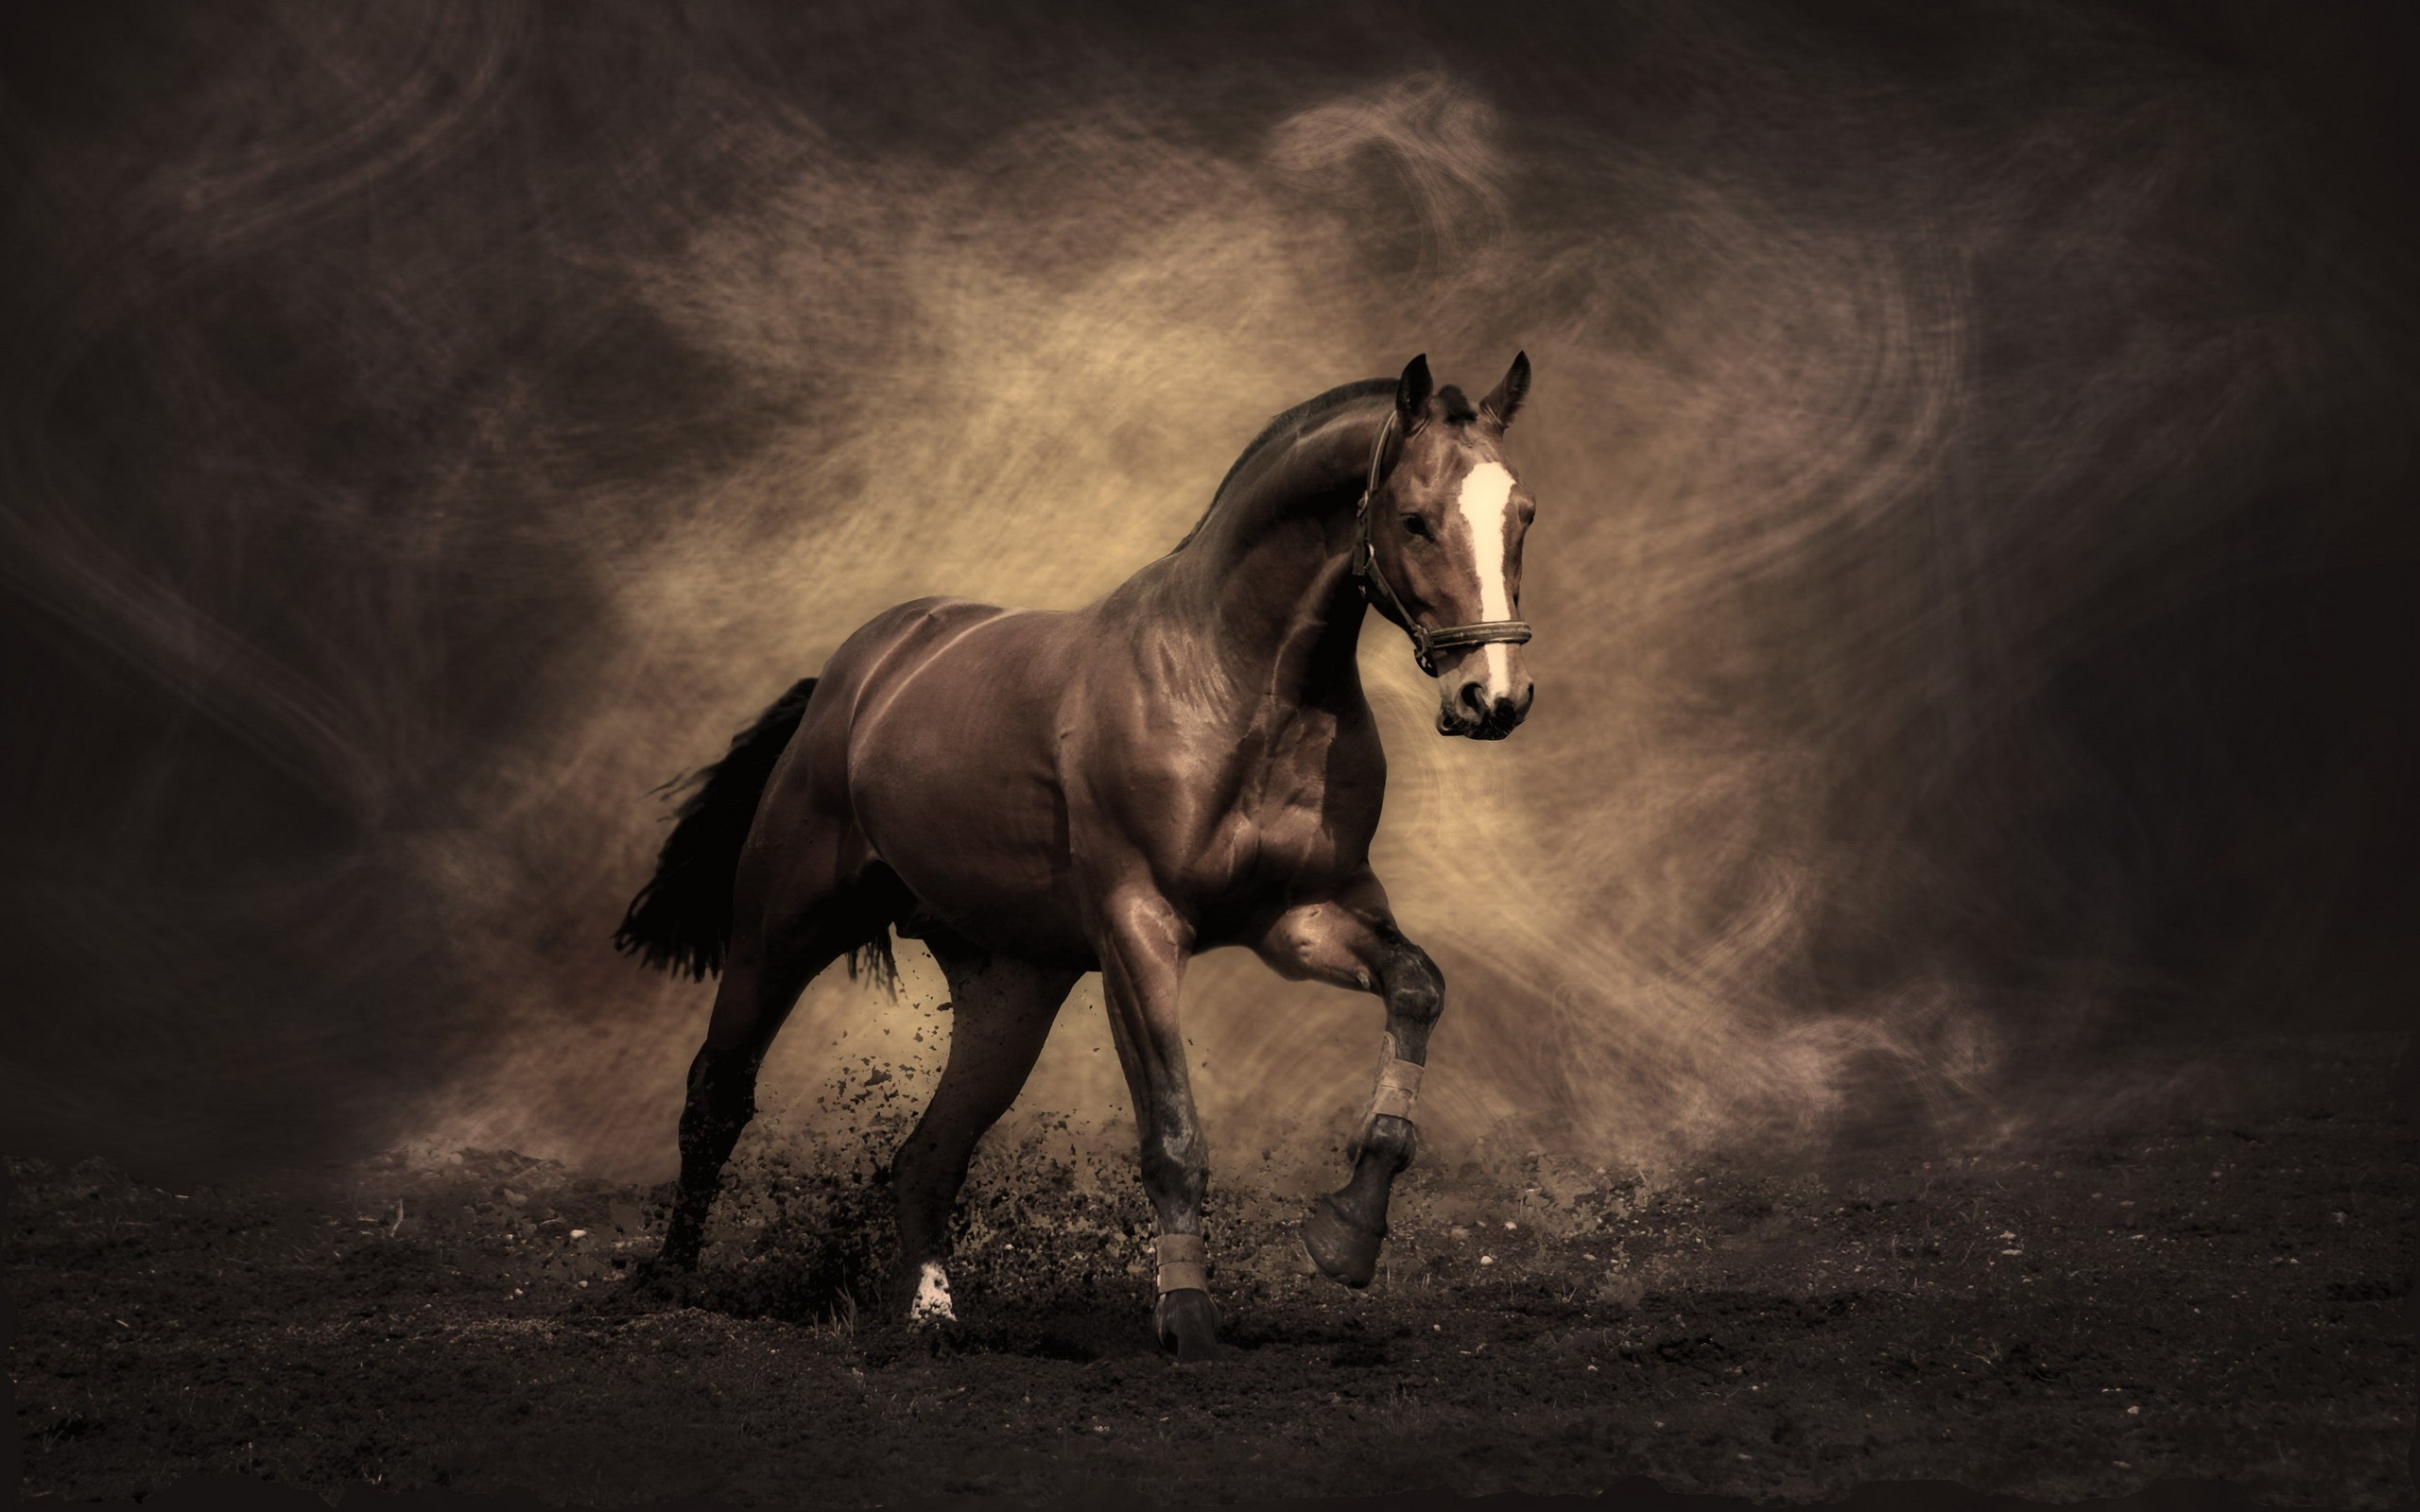 2560x1600 ... Free Wallpaper Downloads | Free Wallpaper: A Dark Horse Running .